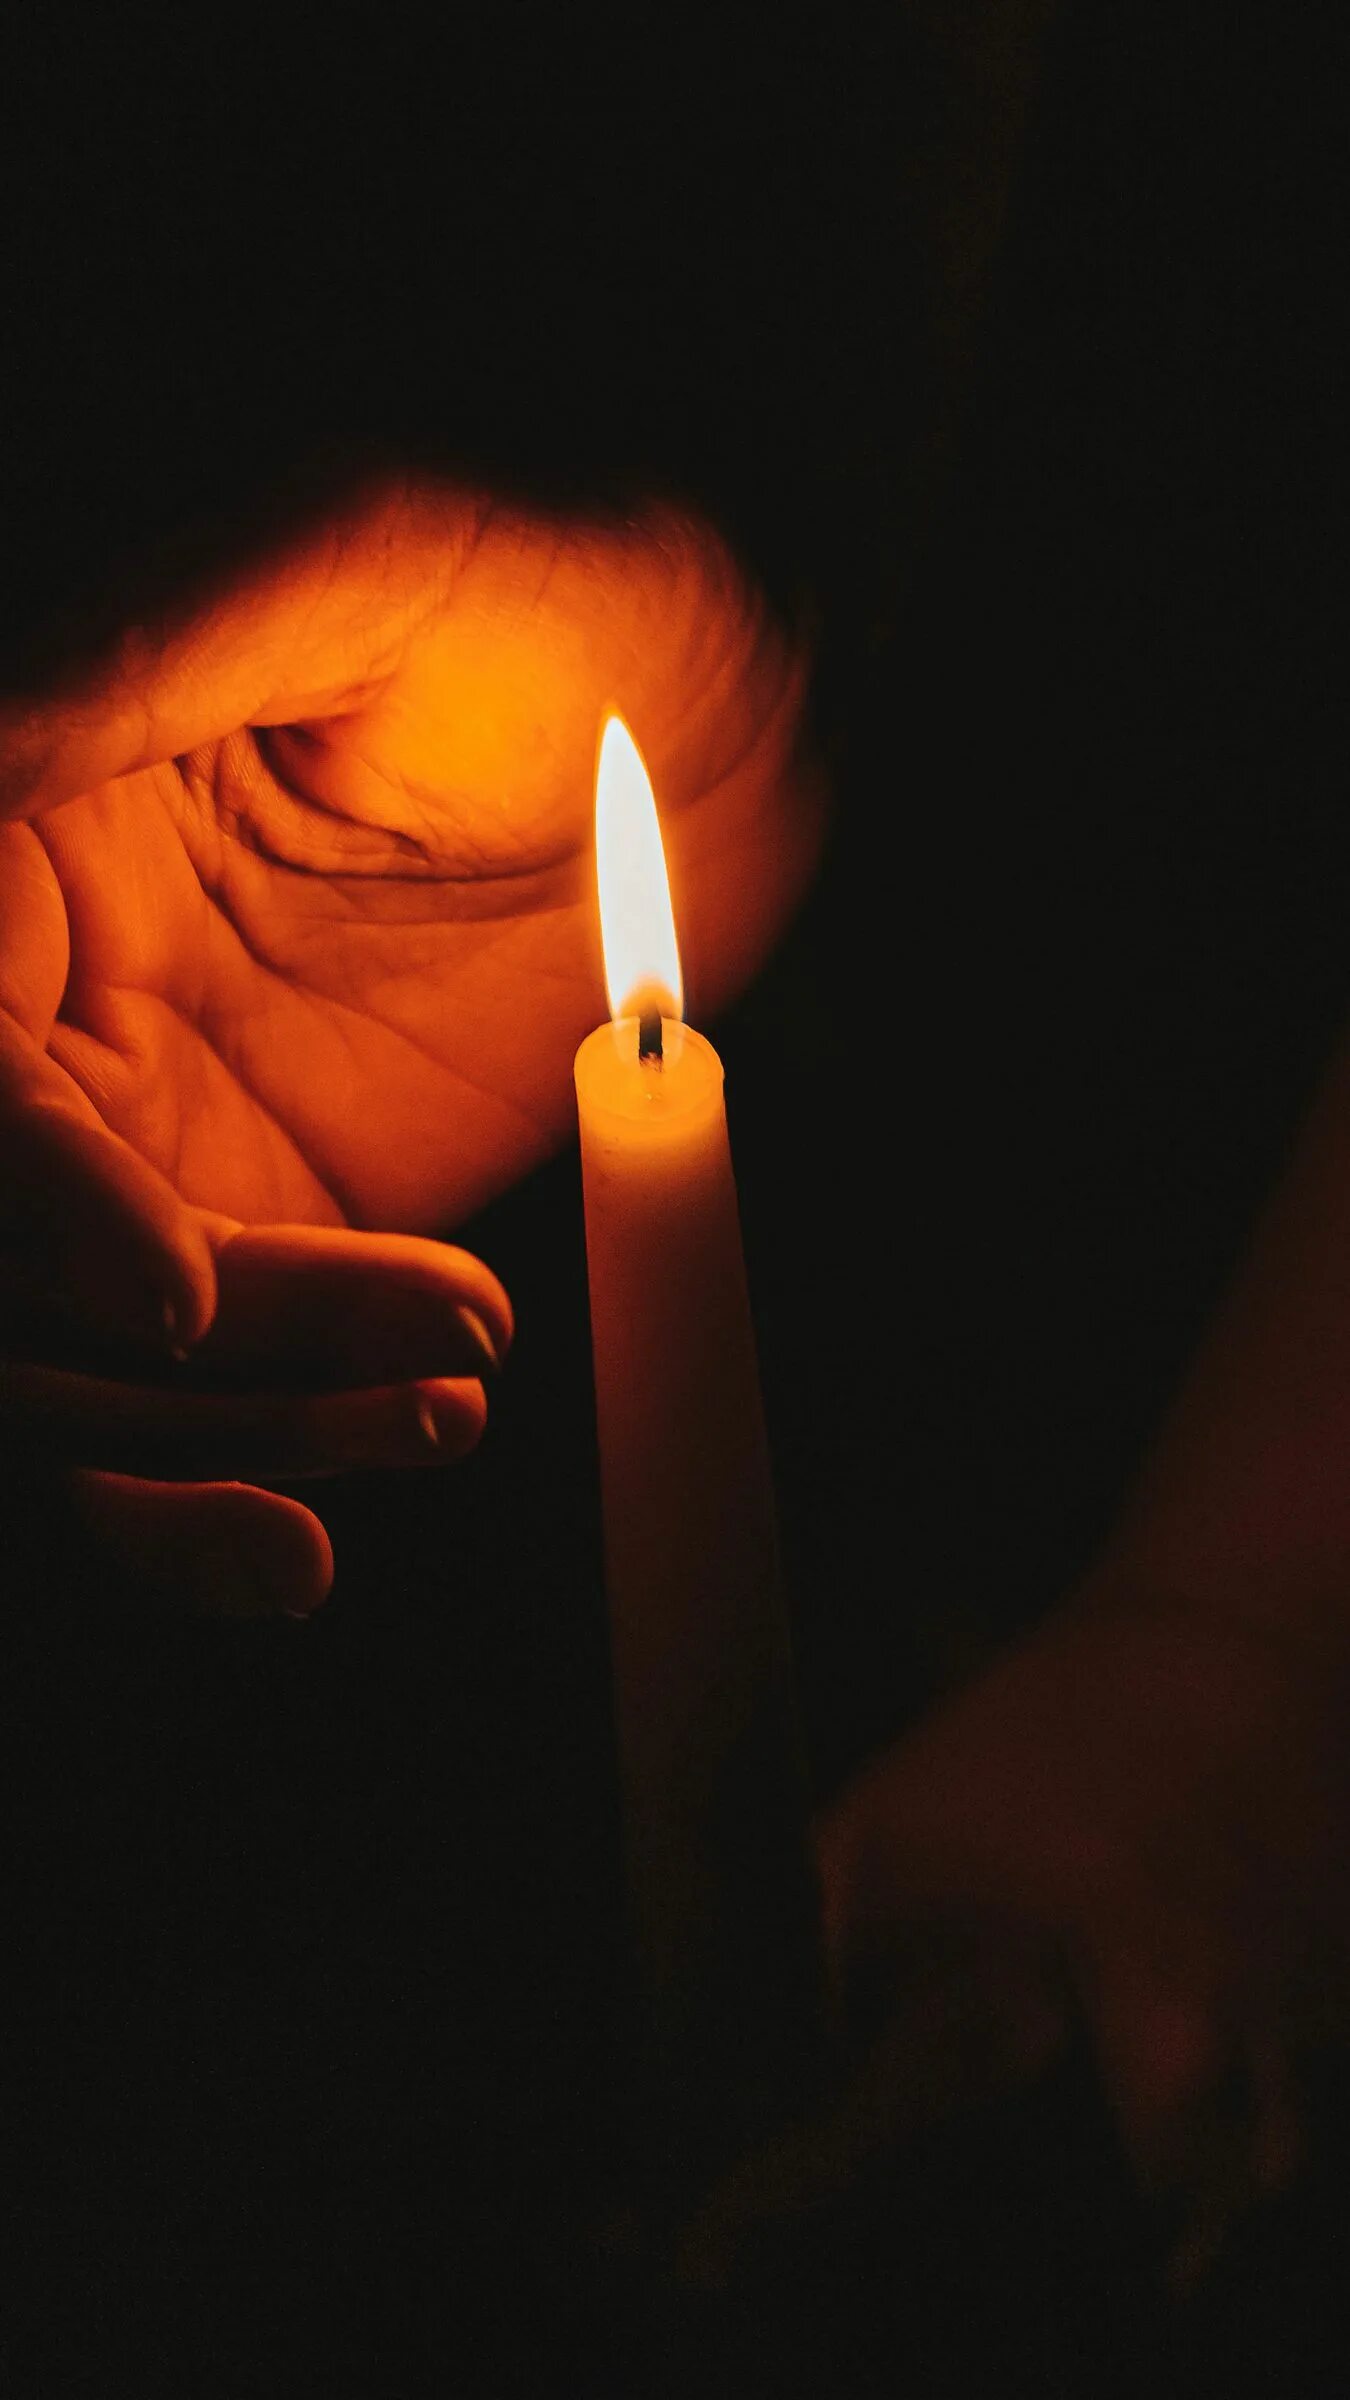 Поминальная свеча. Свеча памяти. Зажженная свеча. Поминальная свеча в ладонях. Зажженная свеча в руках.